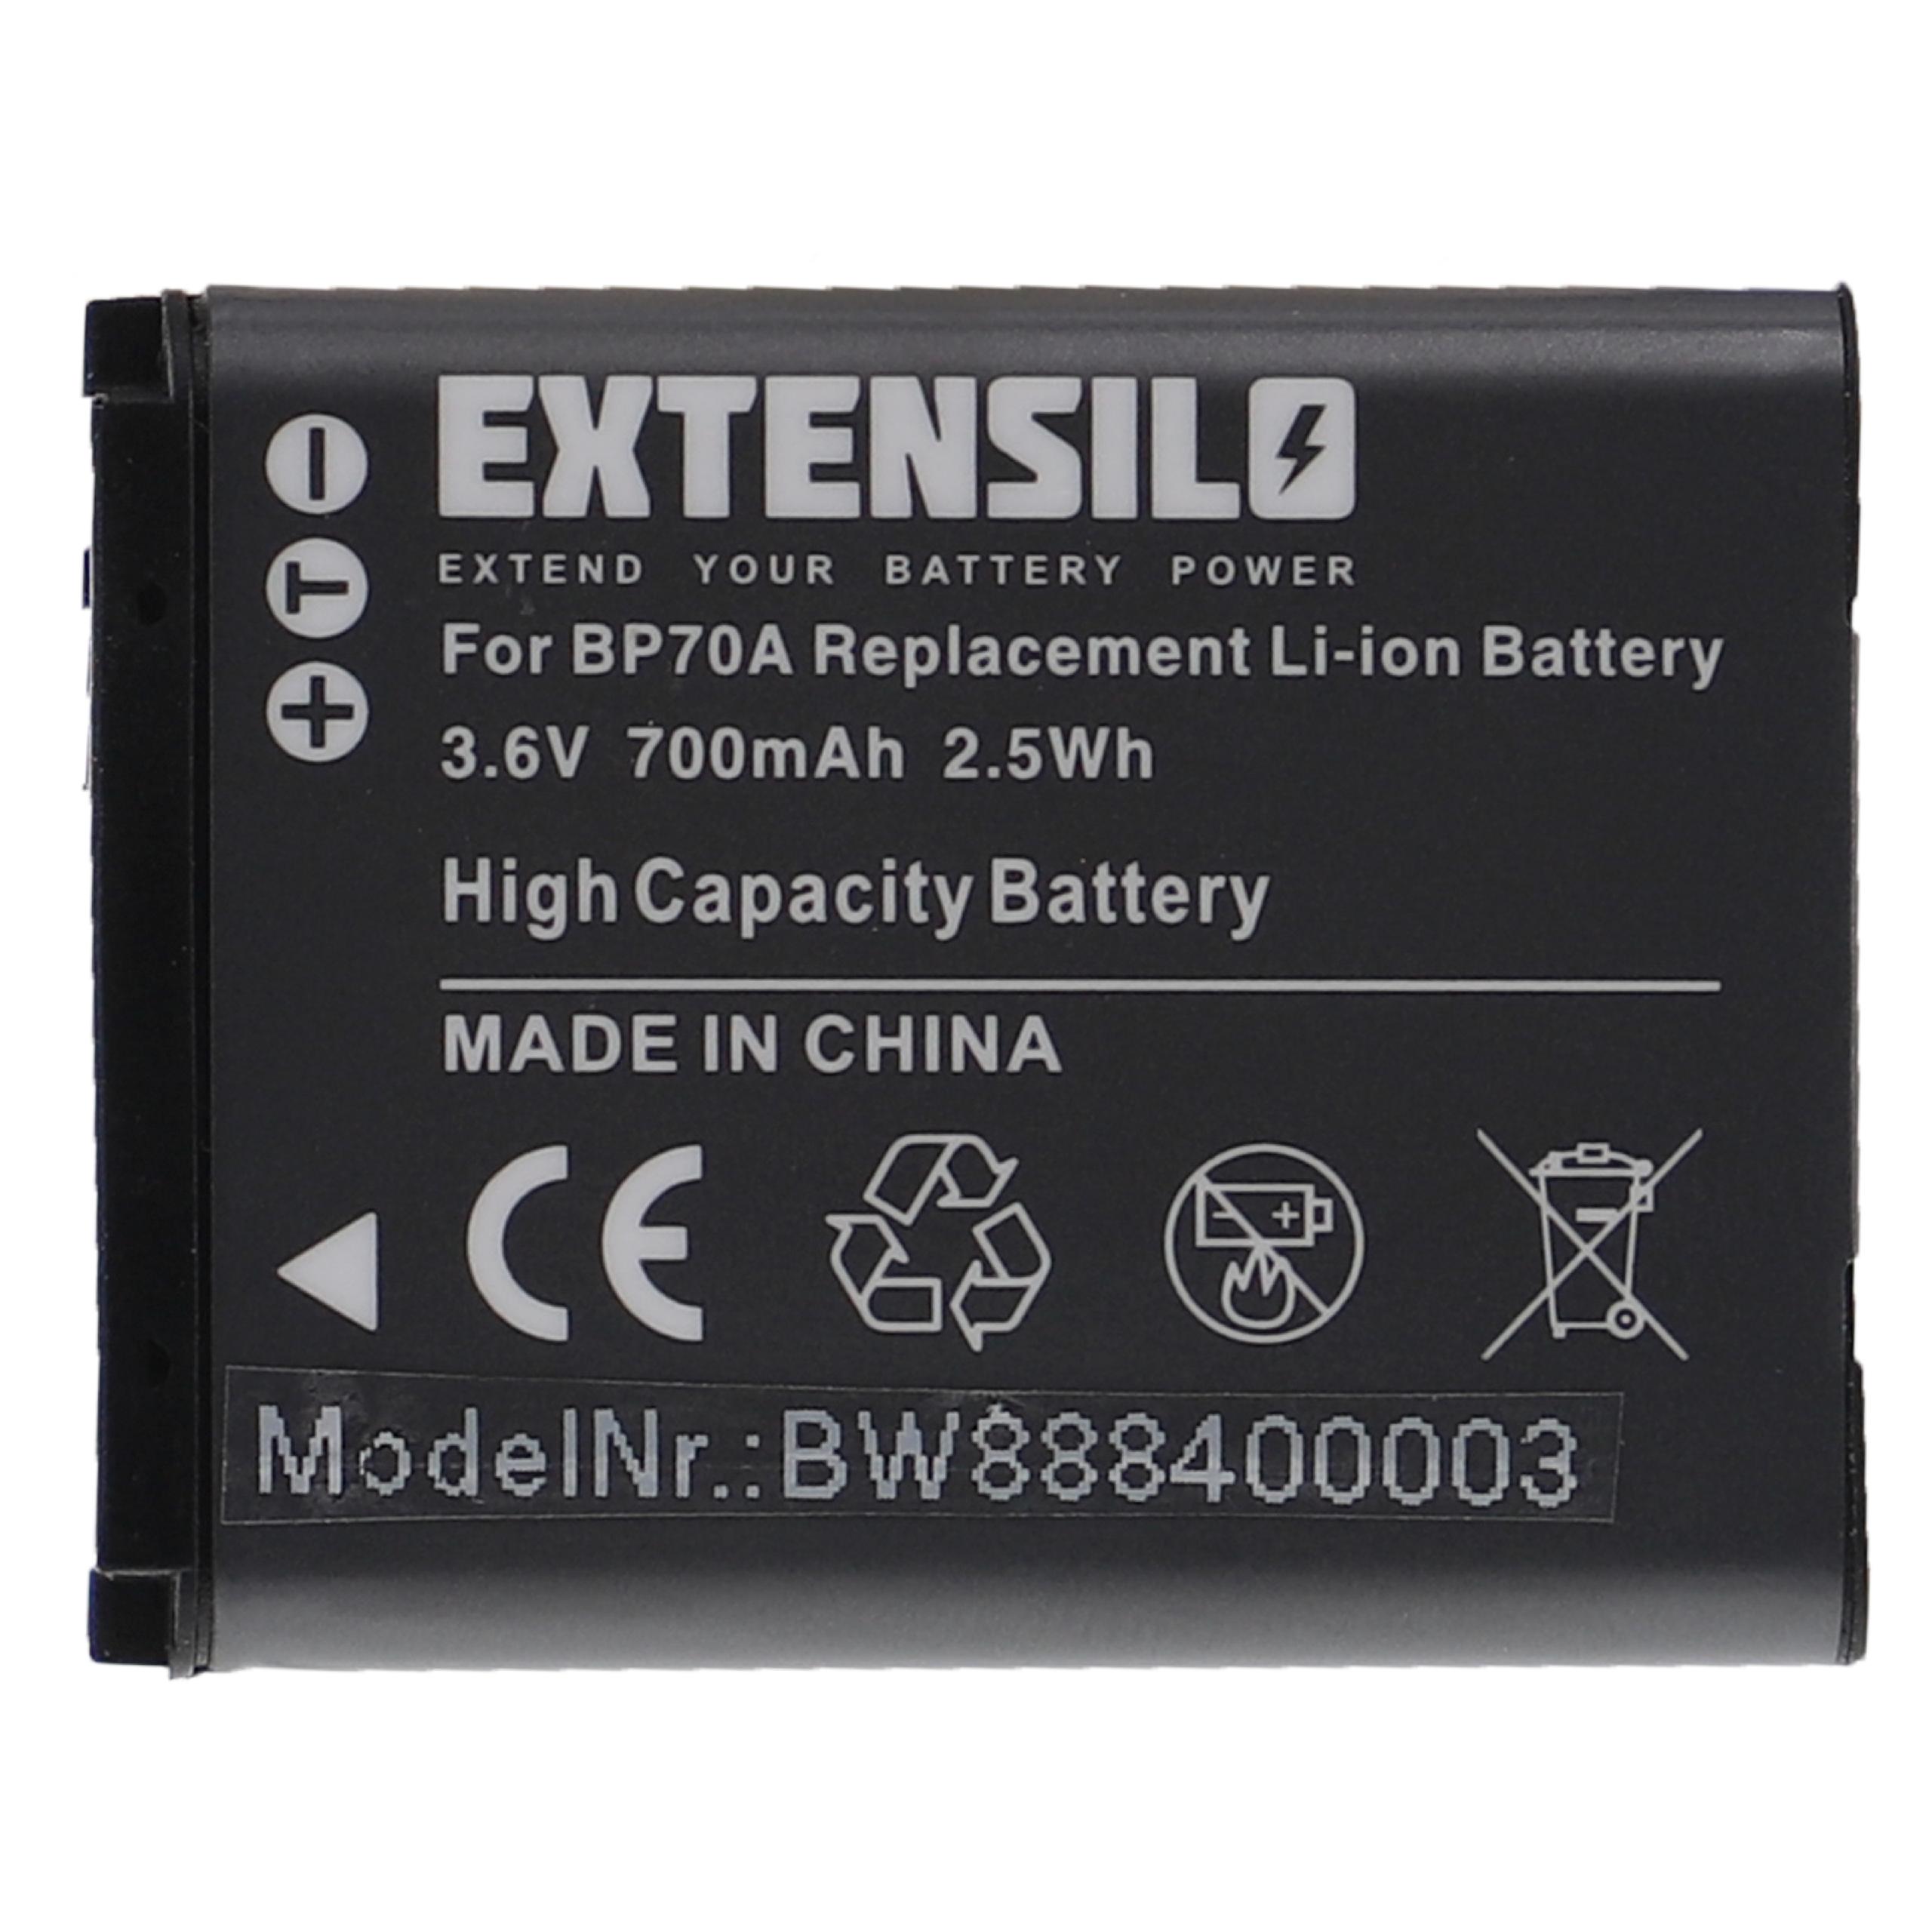 Batterie remplace Samsung BP-70a, SLB-70A, BP70a, EA-BP70A pour appareil photo - 700mAh 3,6V Li-ion